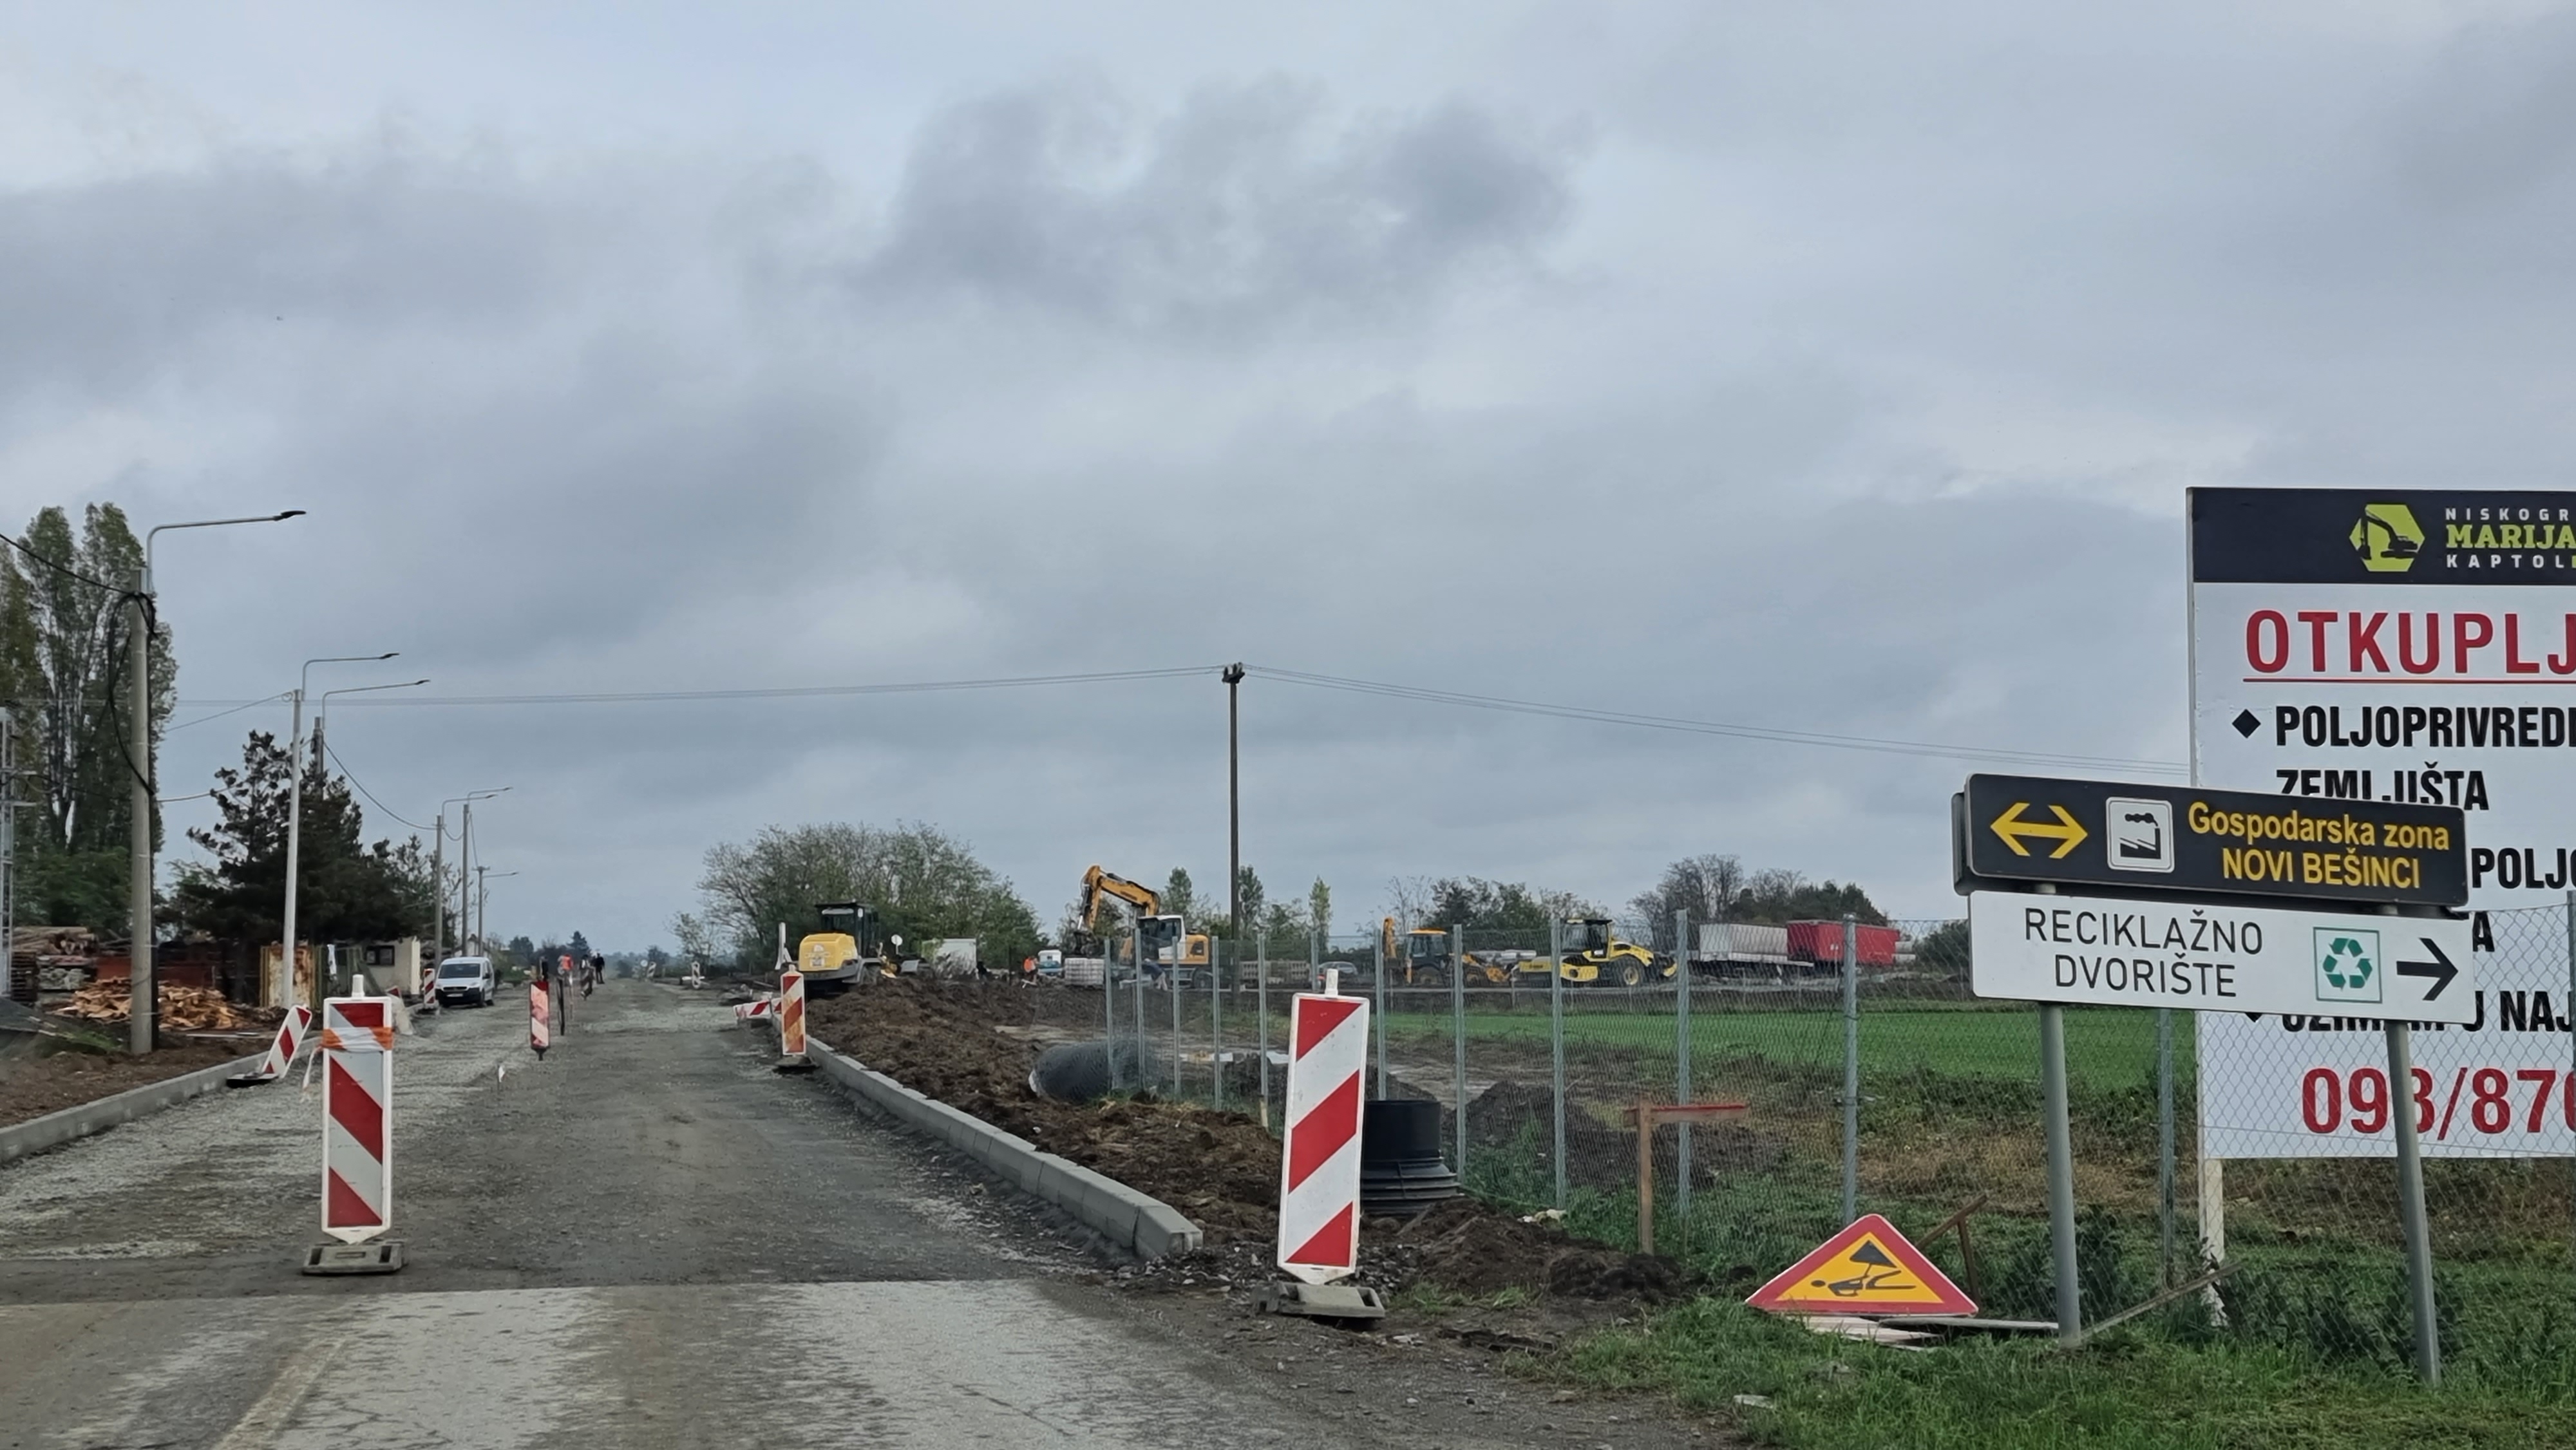 Požega.eu | Pri kraju su infrastrukturna ulaganja na području općine Kaptol vrijedna gotovo šest milijuna kuna /FOTO/